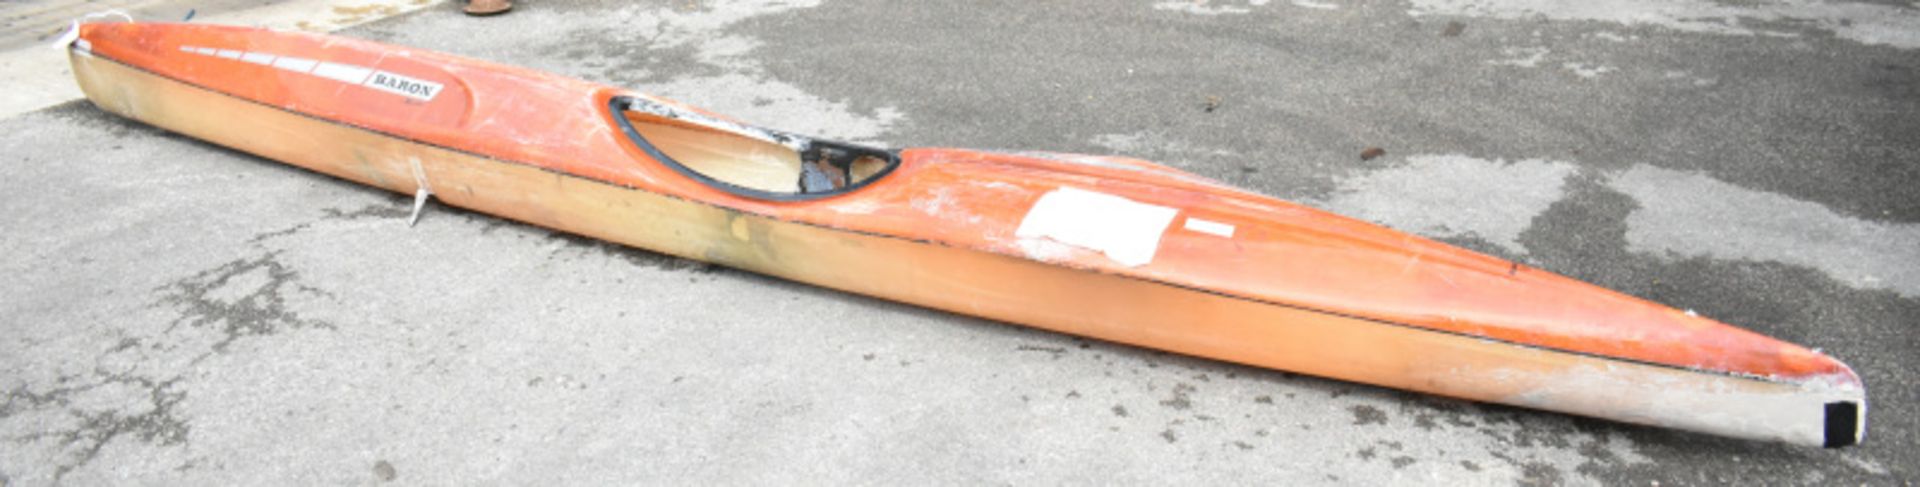 Baron Marlin Kayak - orange - no paddles